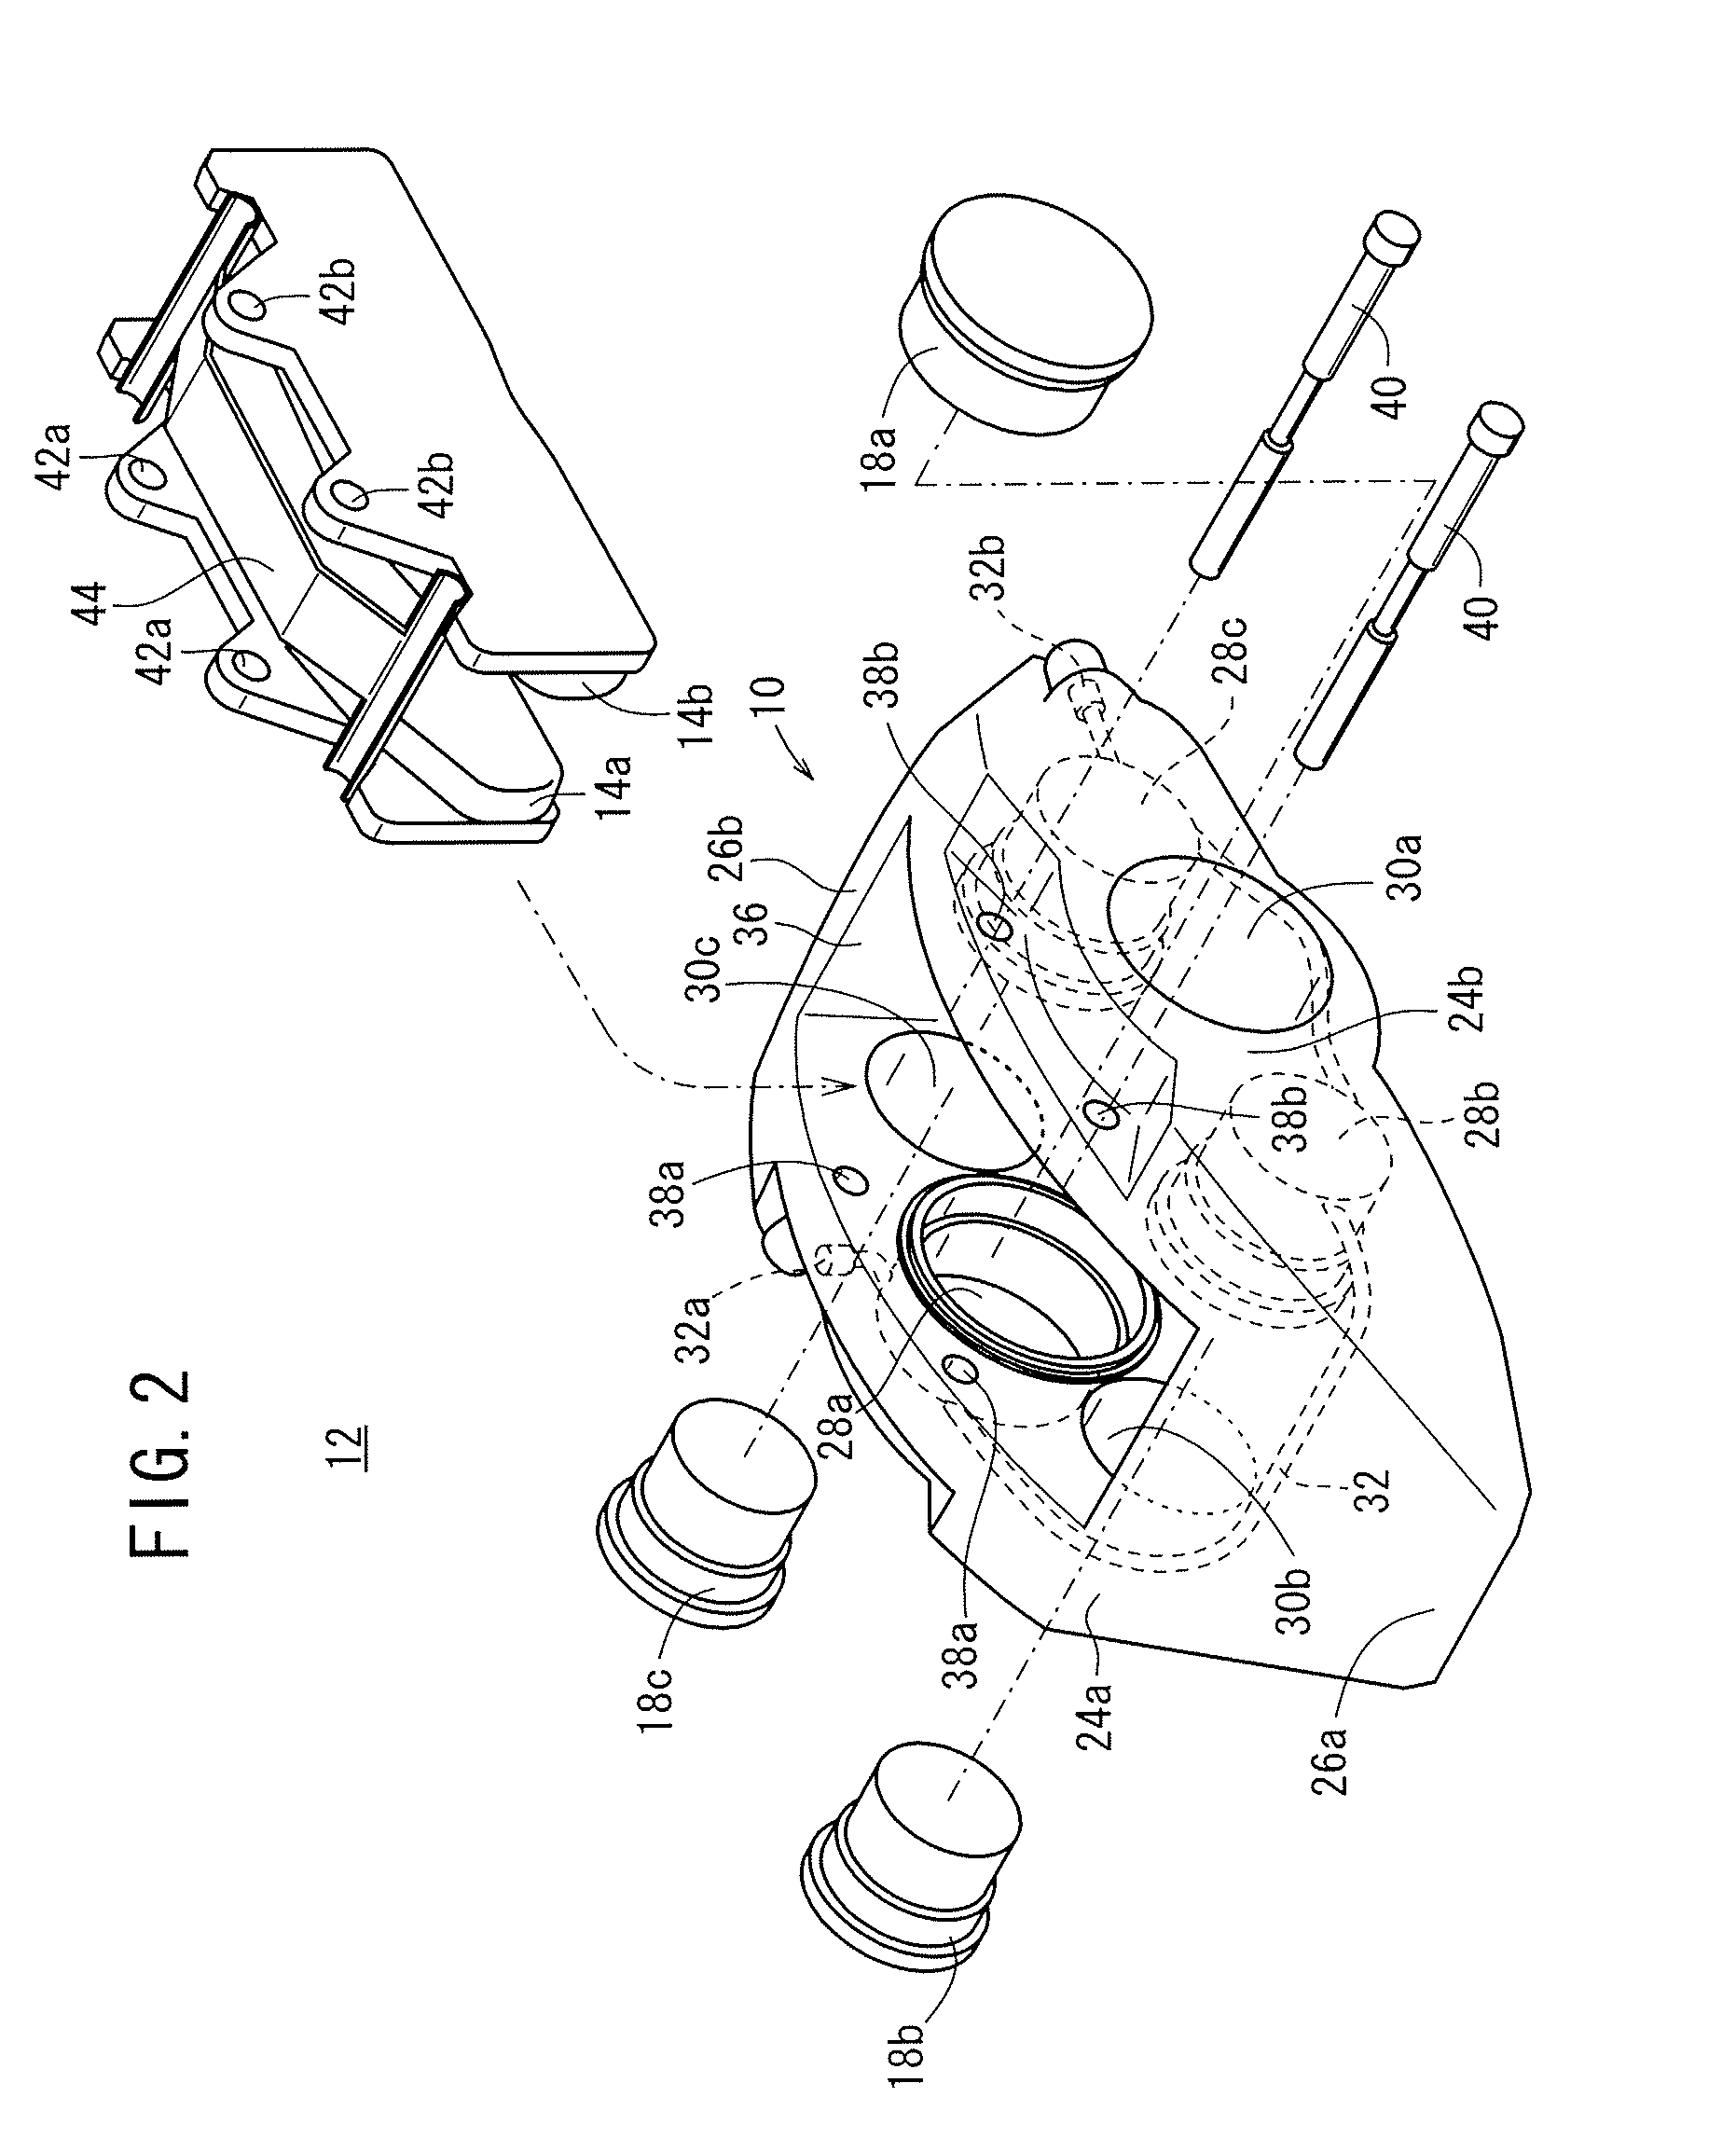 Opposed-piston caliper body